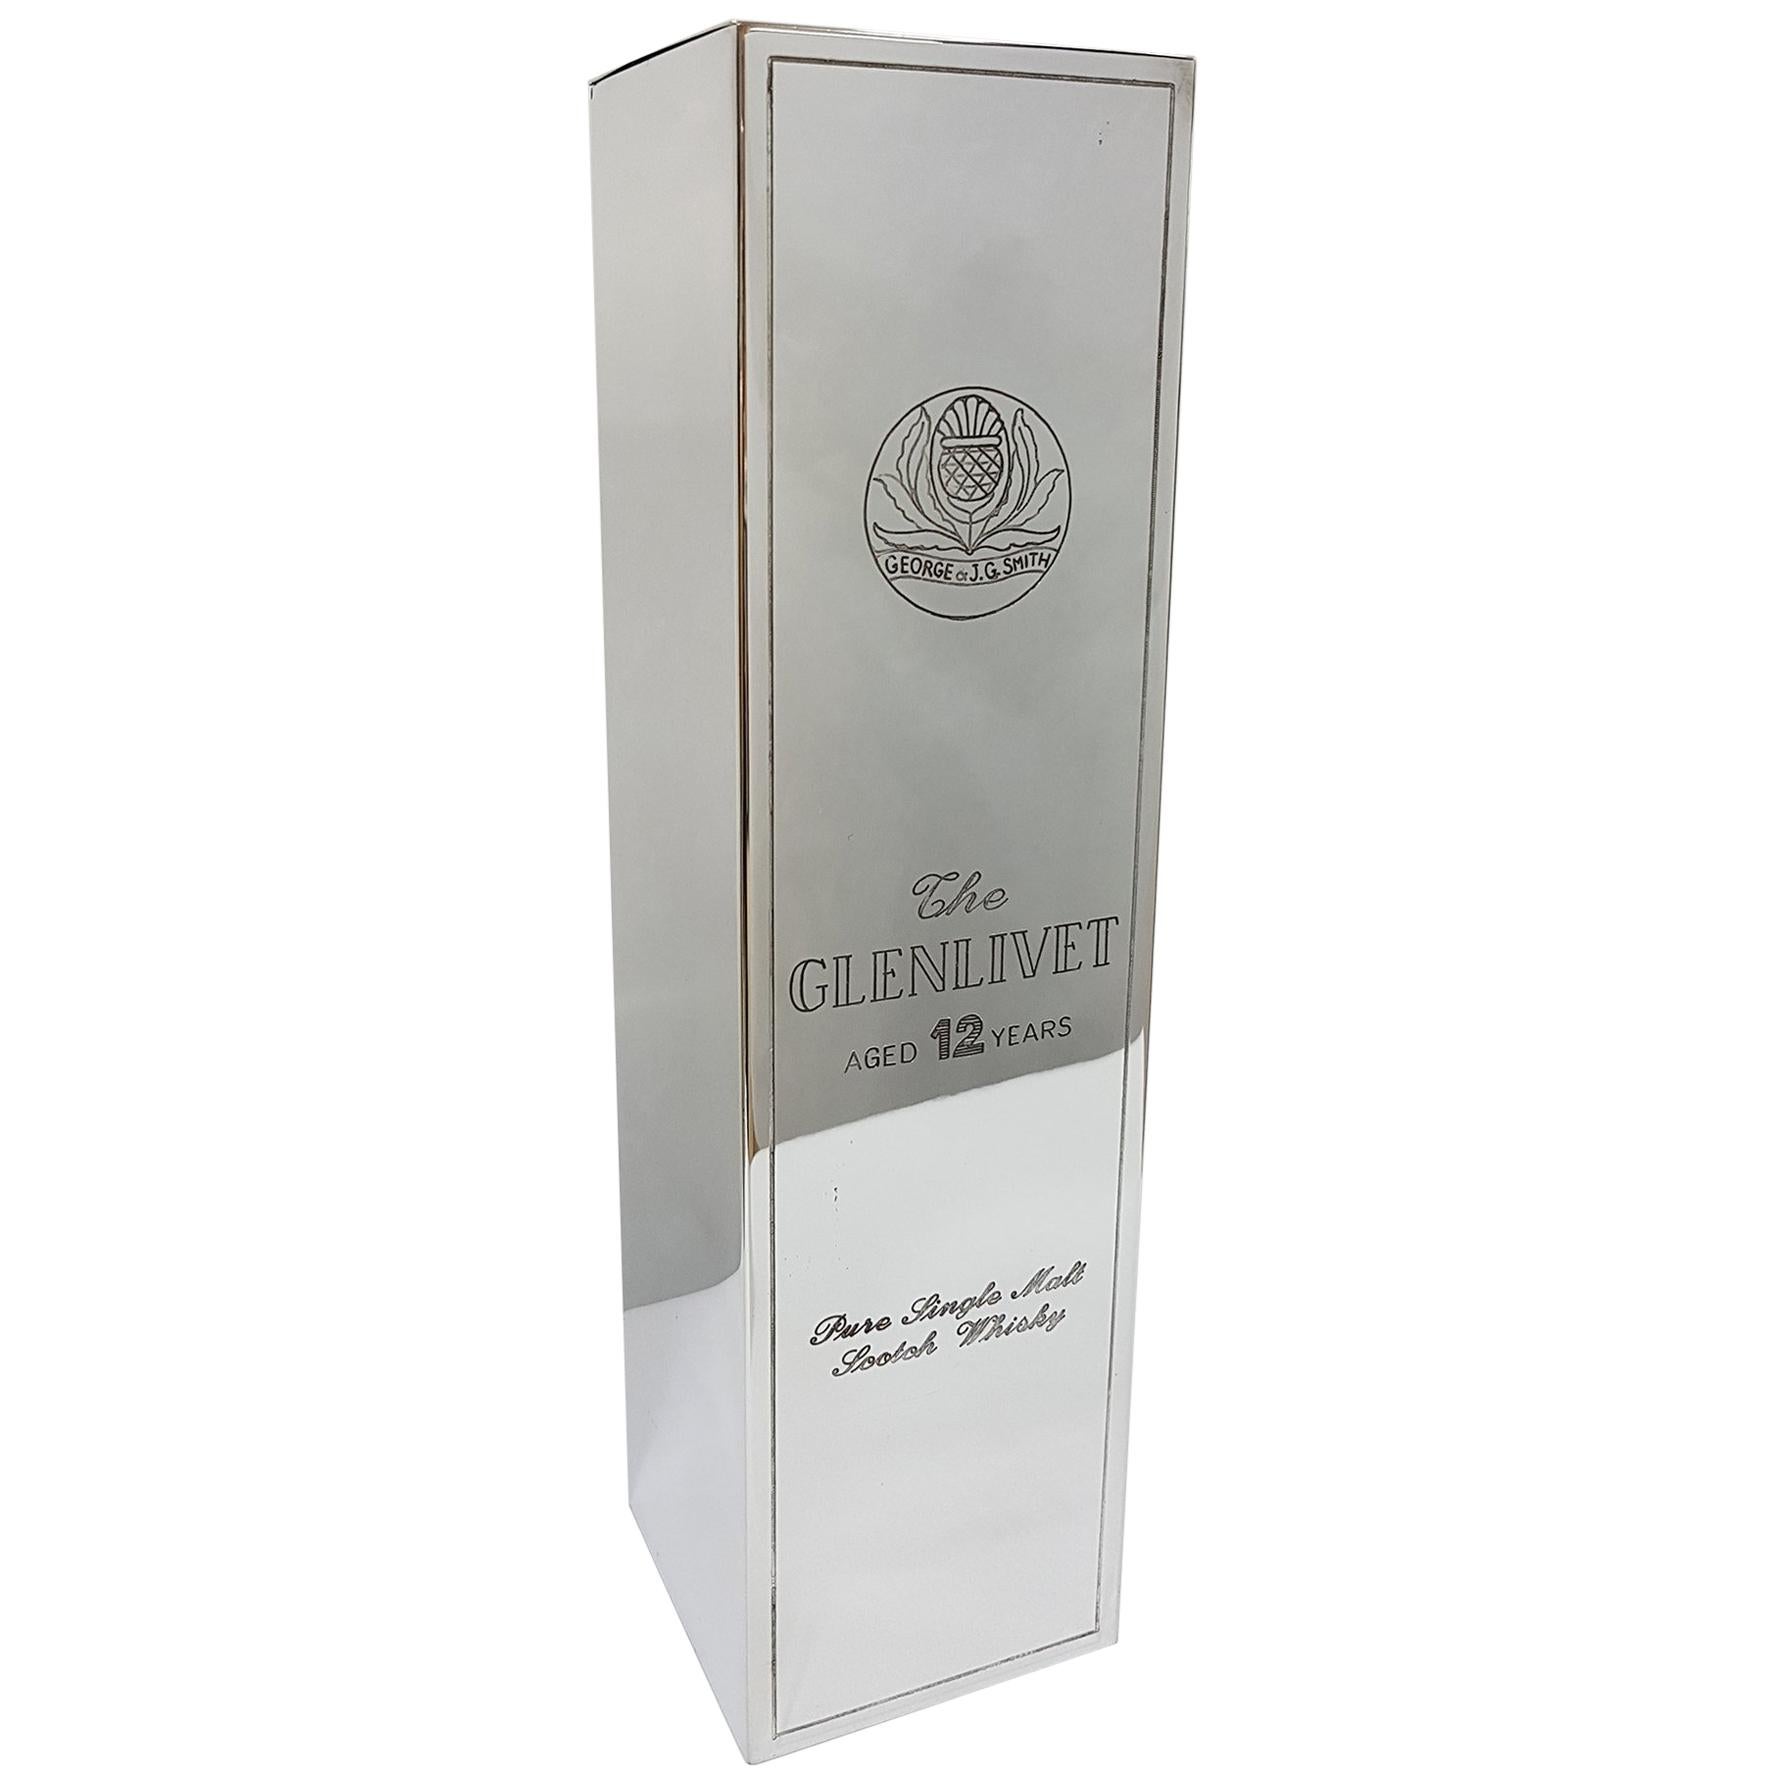 20th Century Italian Silver Engraved Whisky Bottle Holder "Glenlivet" For Sale